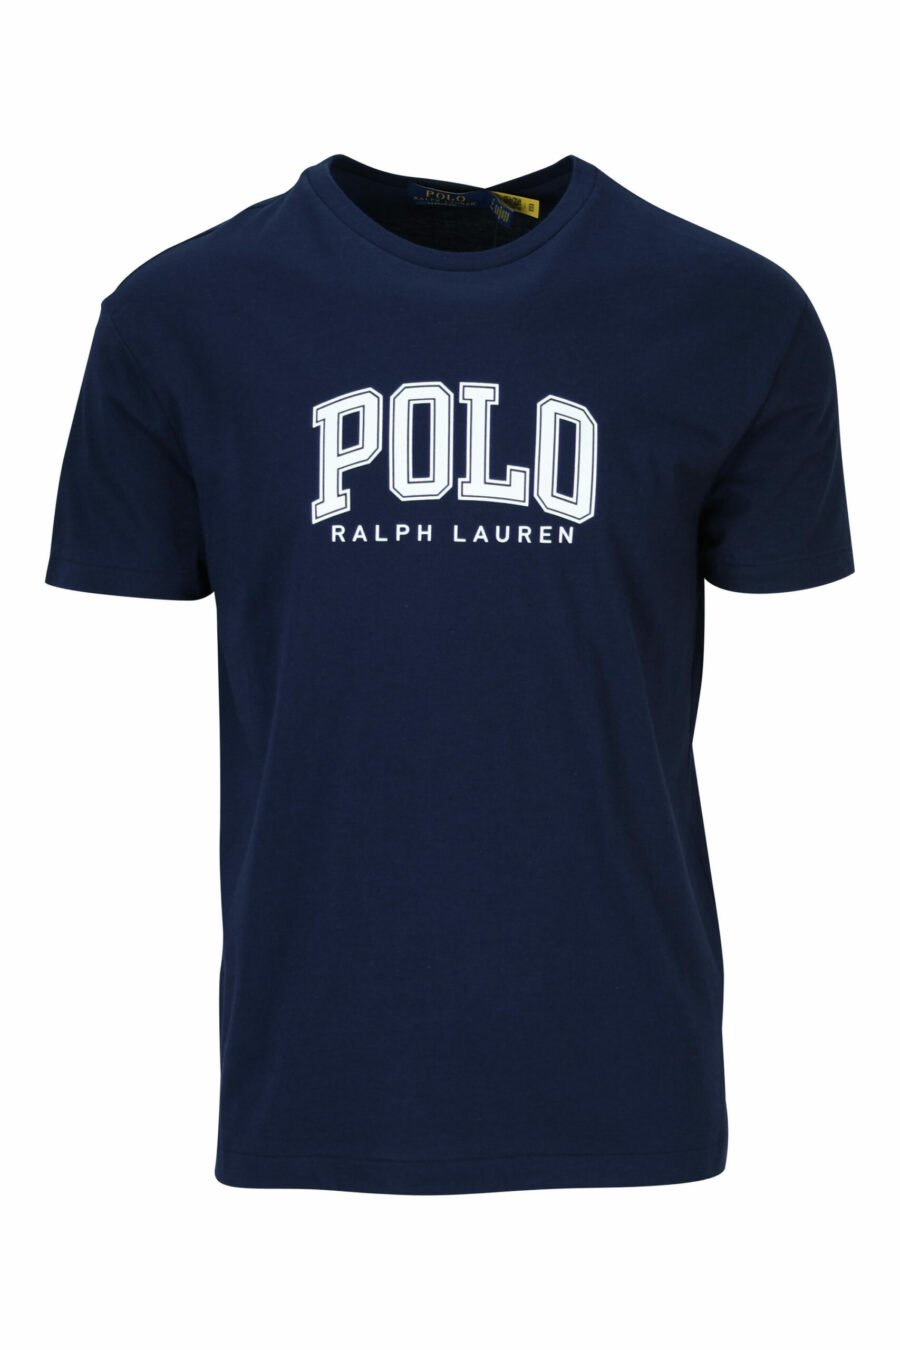 Camiseta azul oscuro con maxilogo "polo" blanco - 3616535909311 scaled